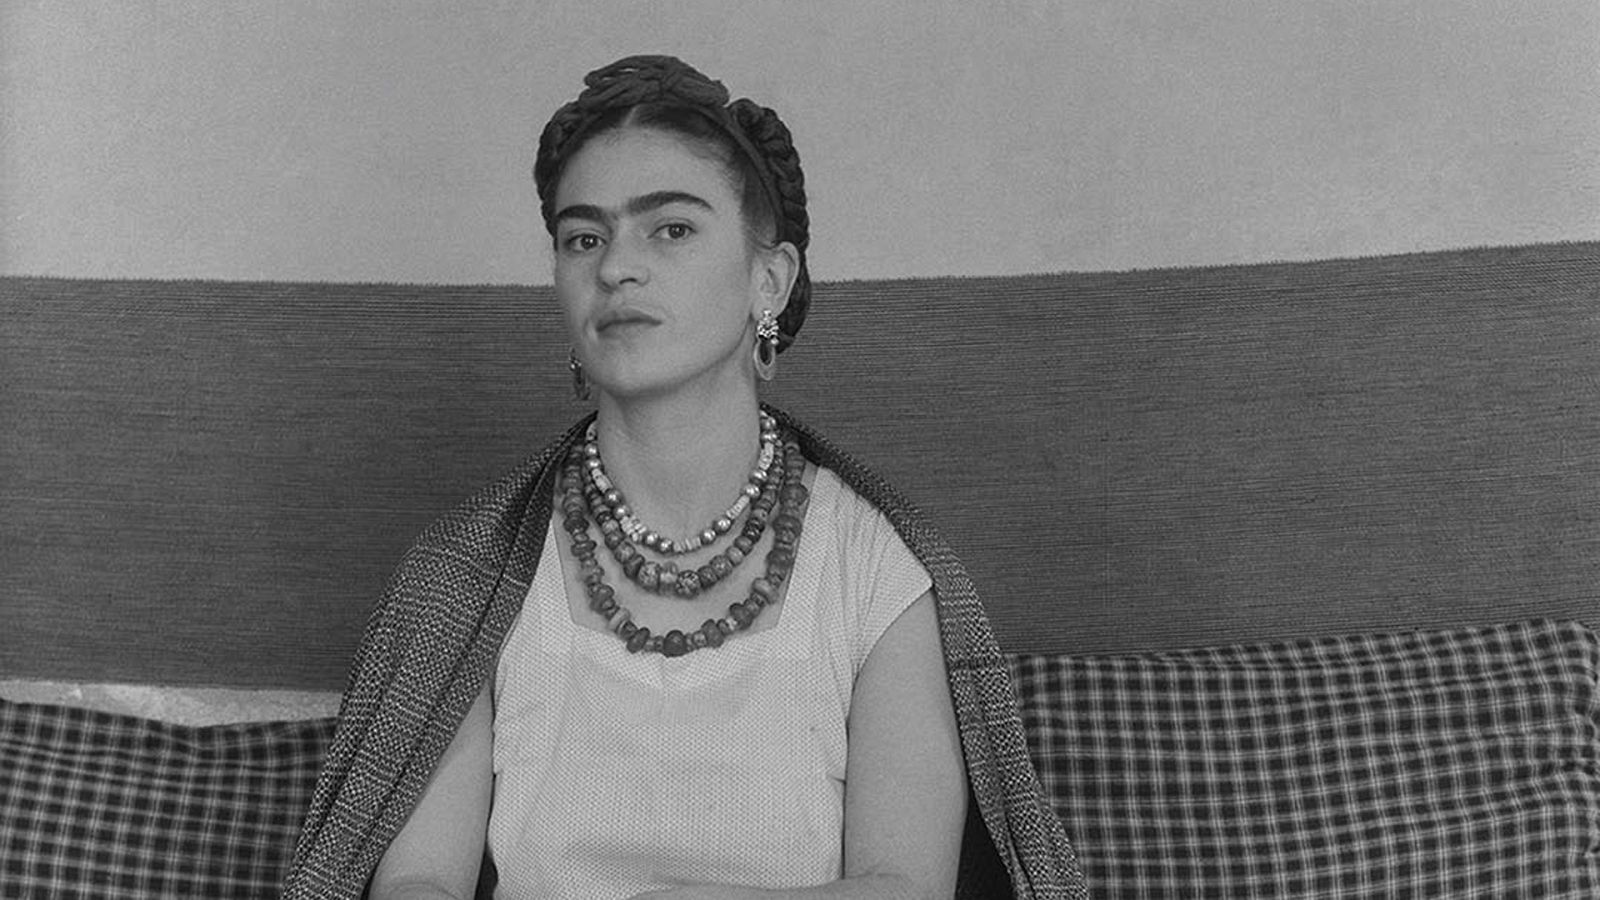 Frida Kahlo - Capítulo 2: Amor y pérdida | Ver documental gratis